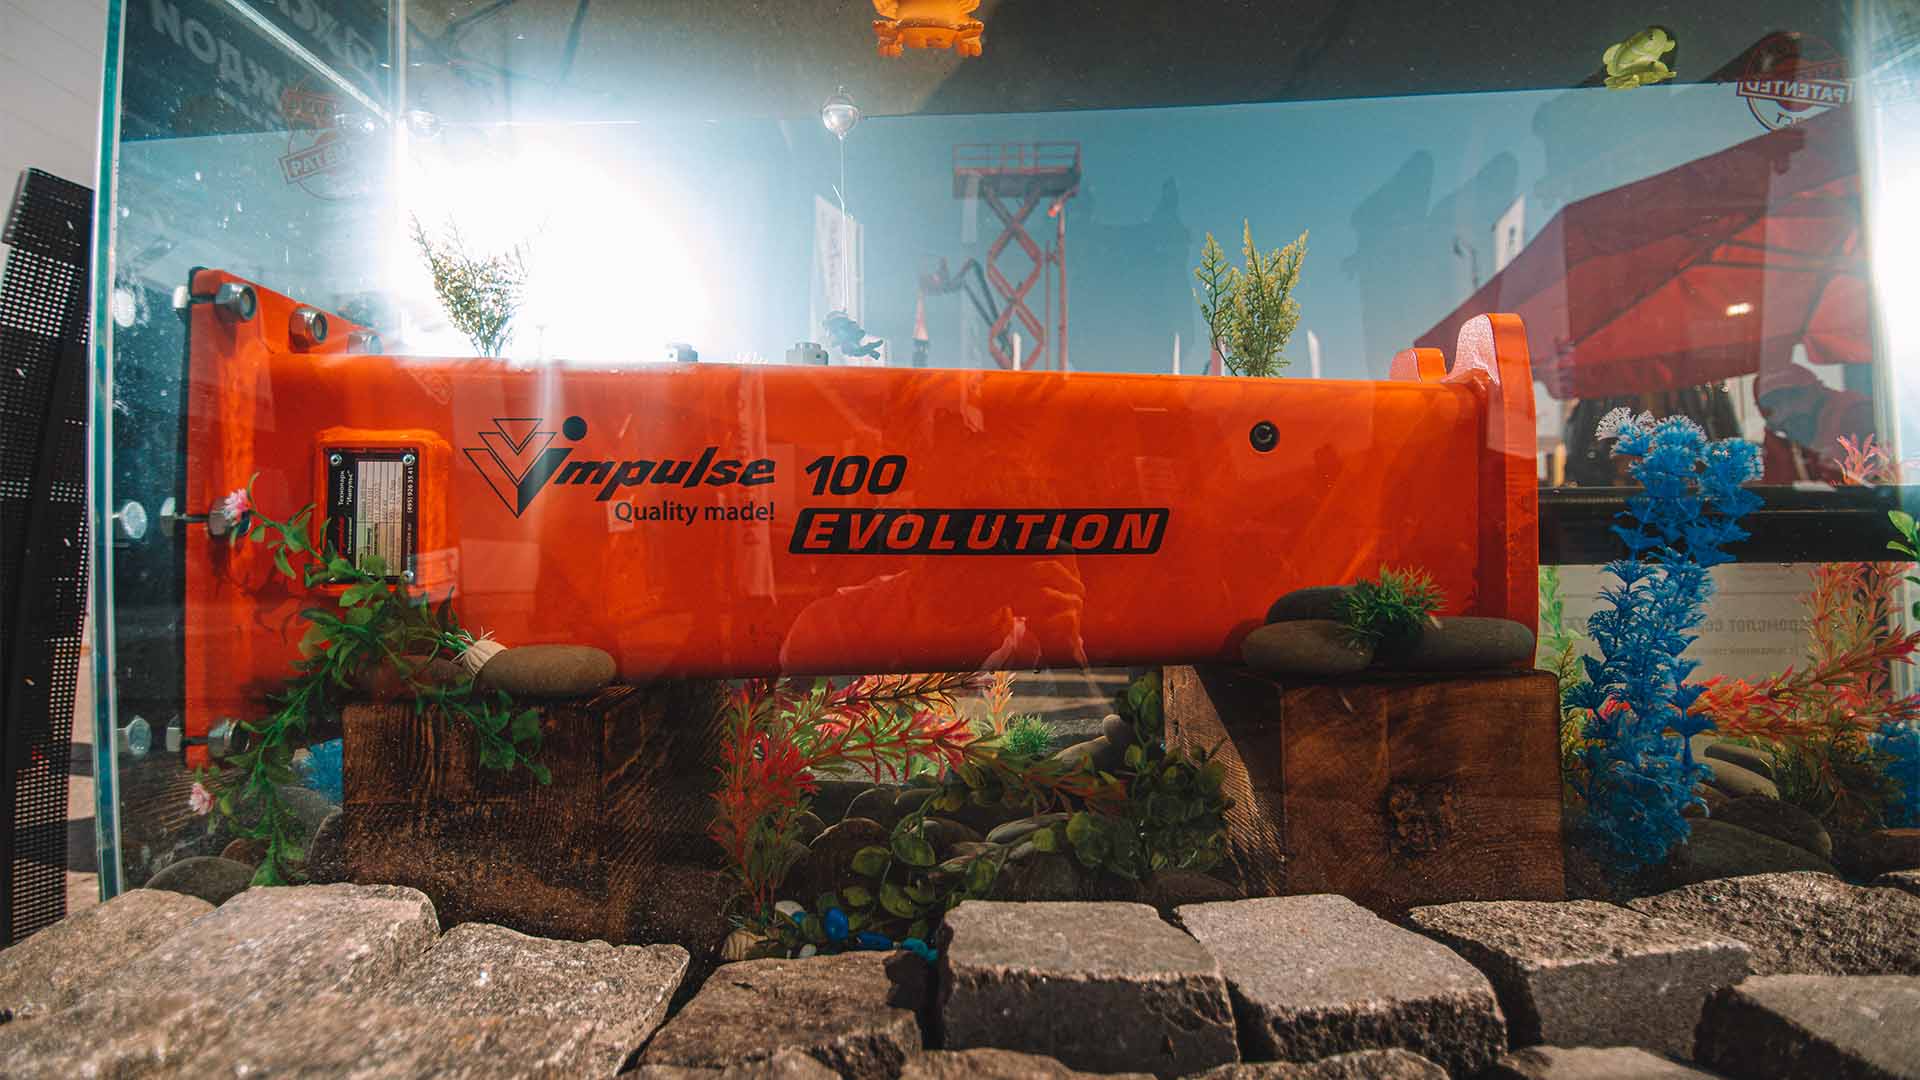 Гидрорыхлитель Impulse 100 Evolution в аквариуме